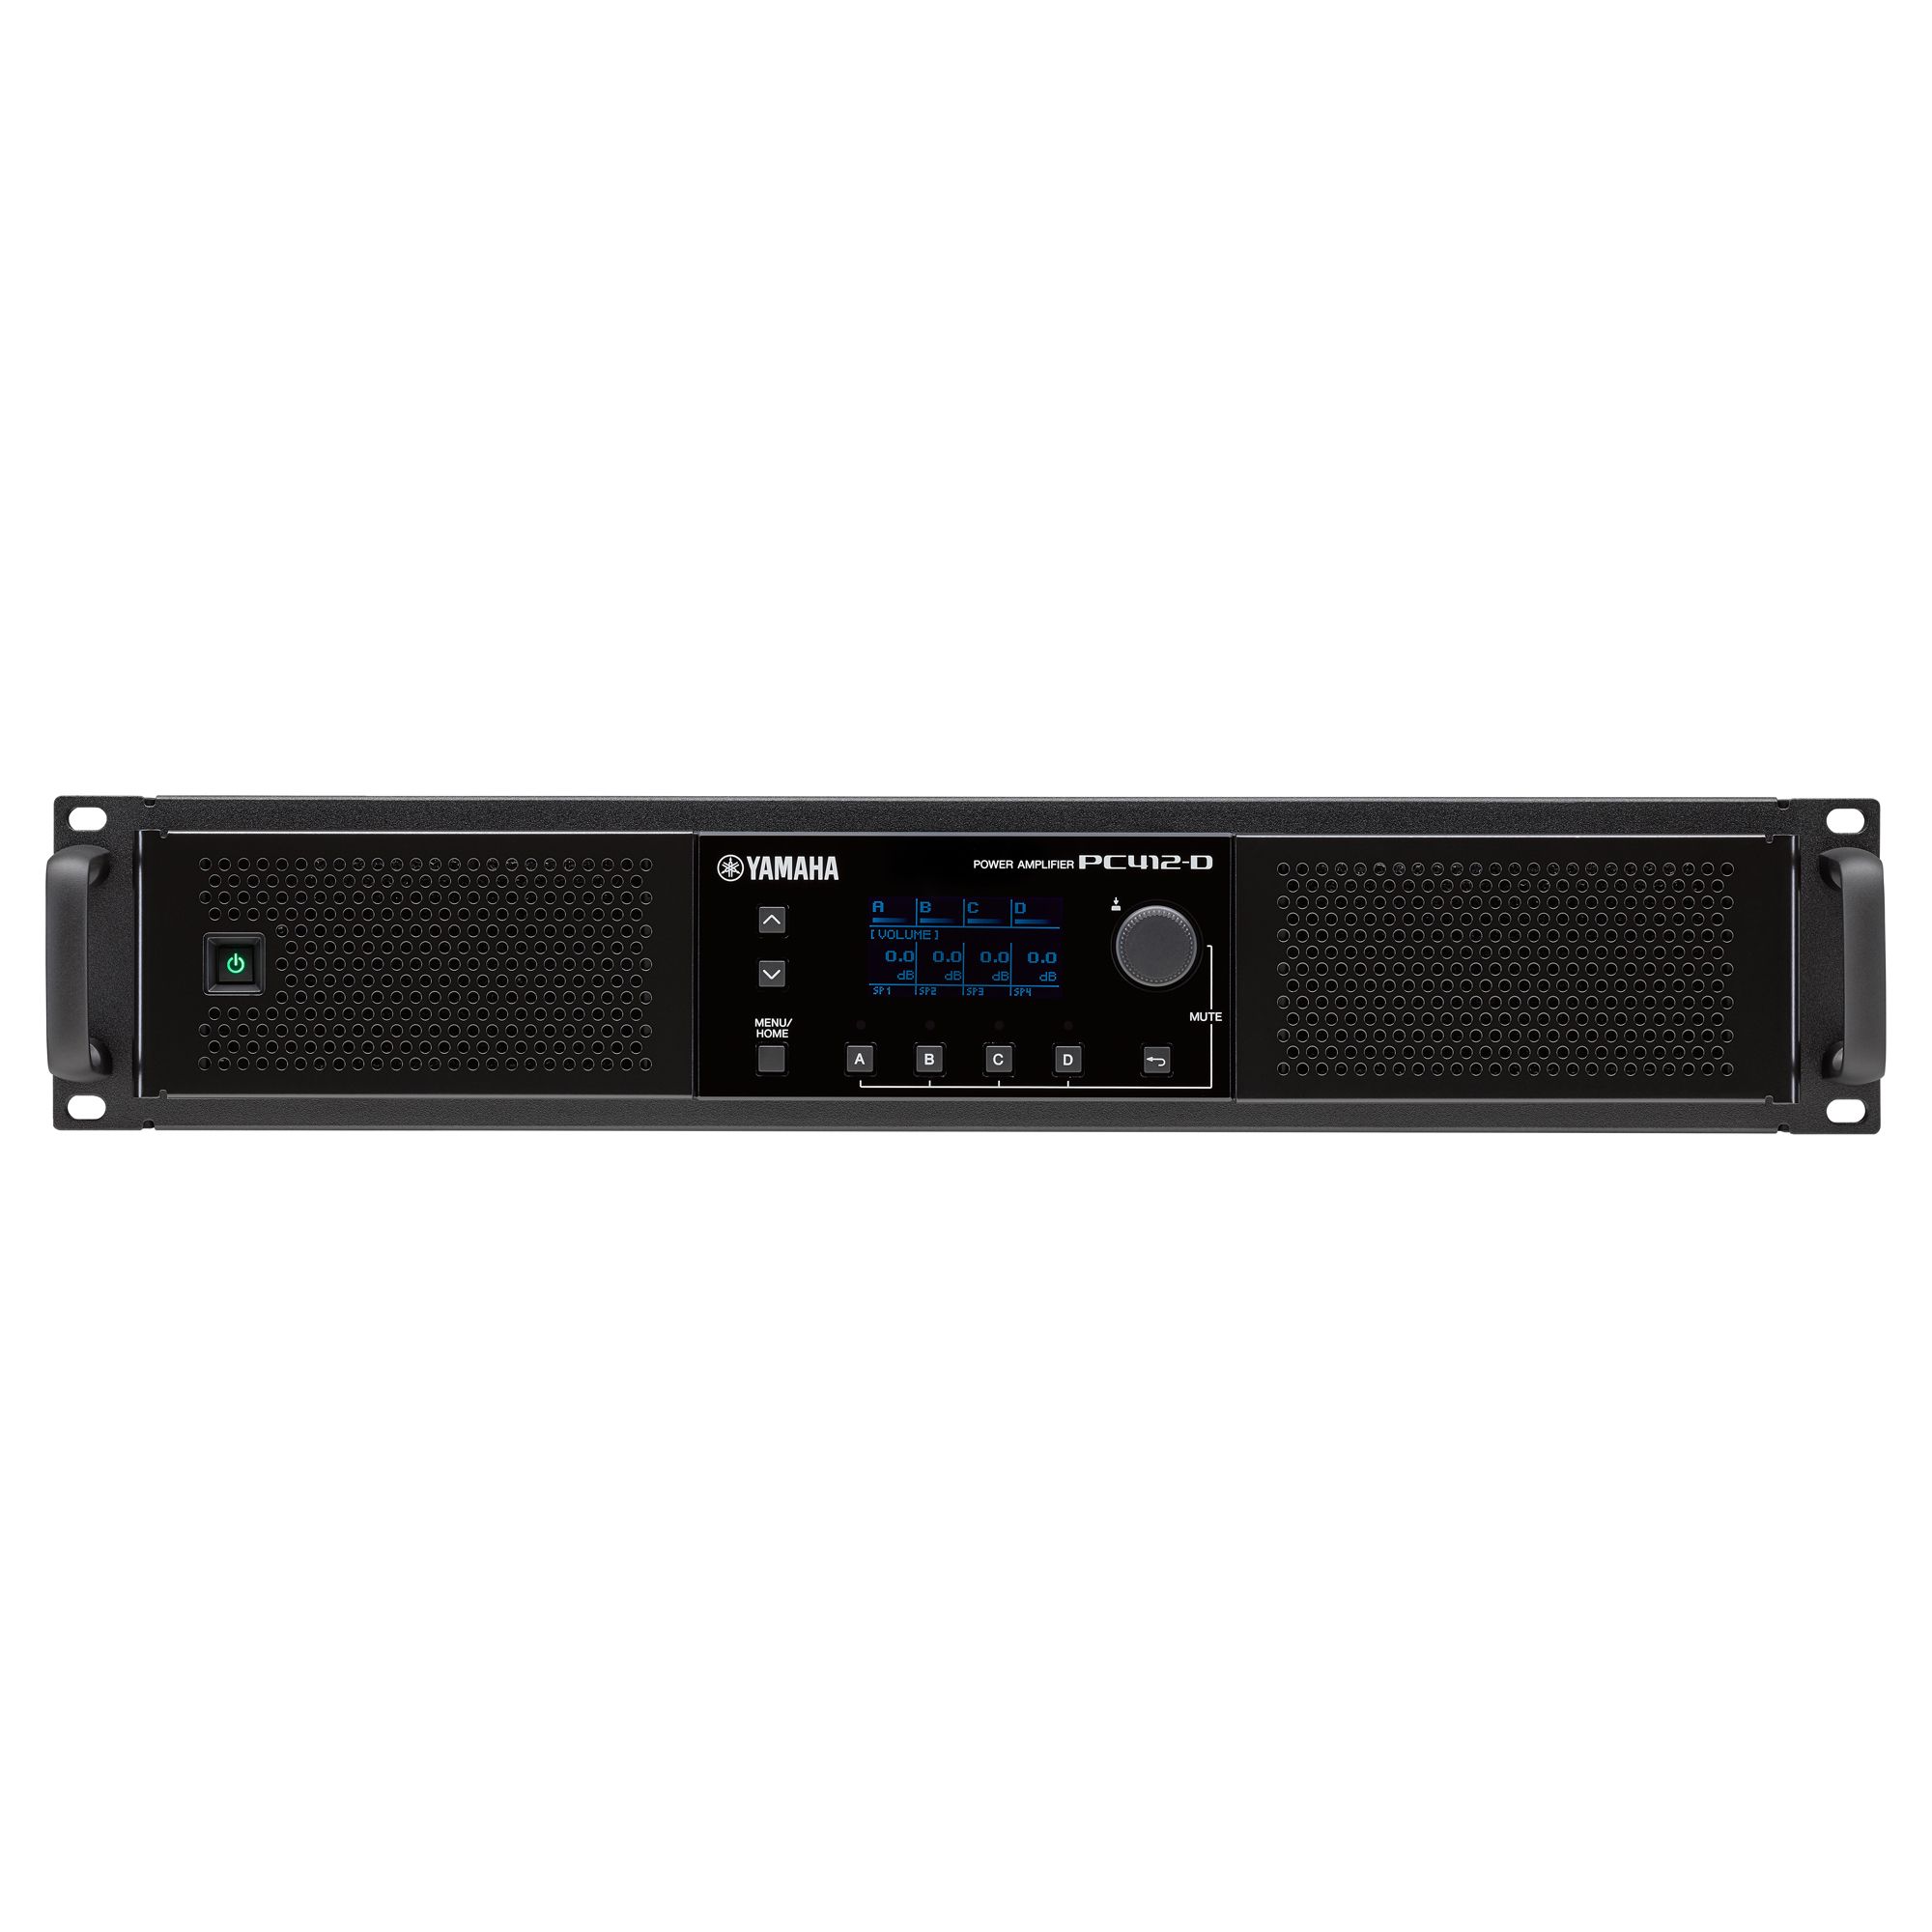 Serie PC-D / DI - Descripción - Amplificadores de potencia - Audio  profesional - Productos - Yamaha - México